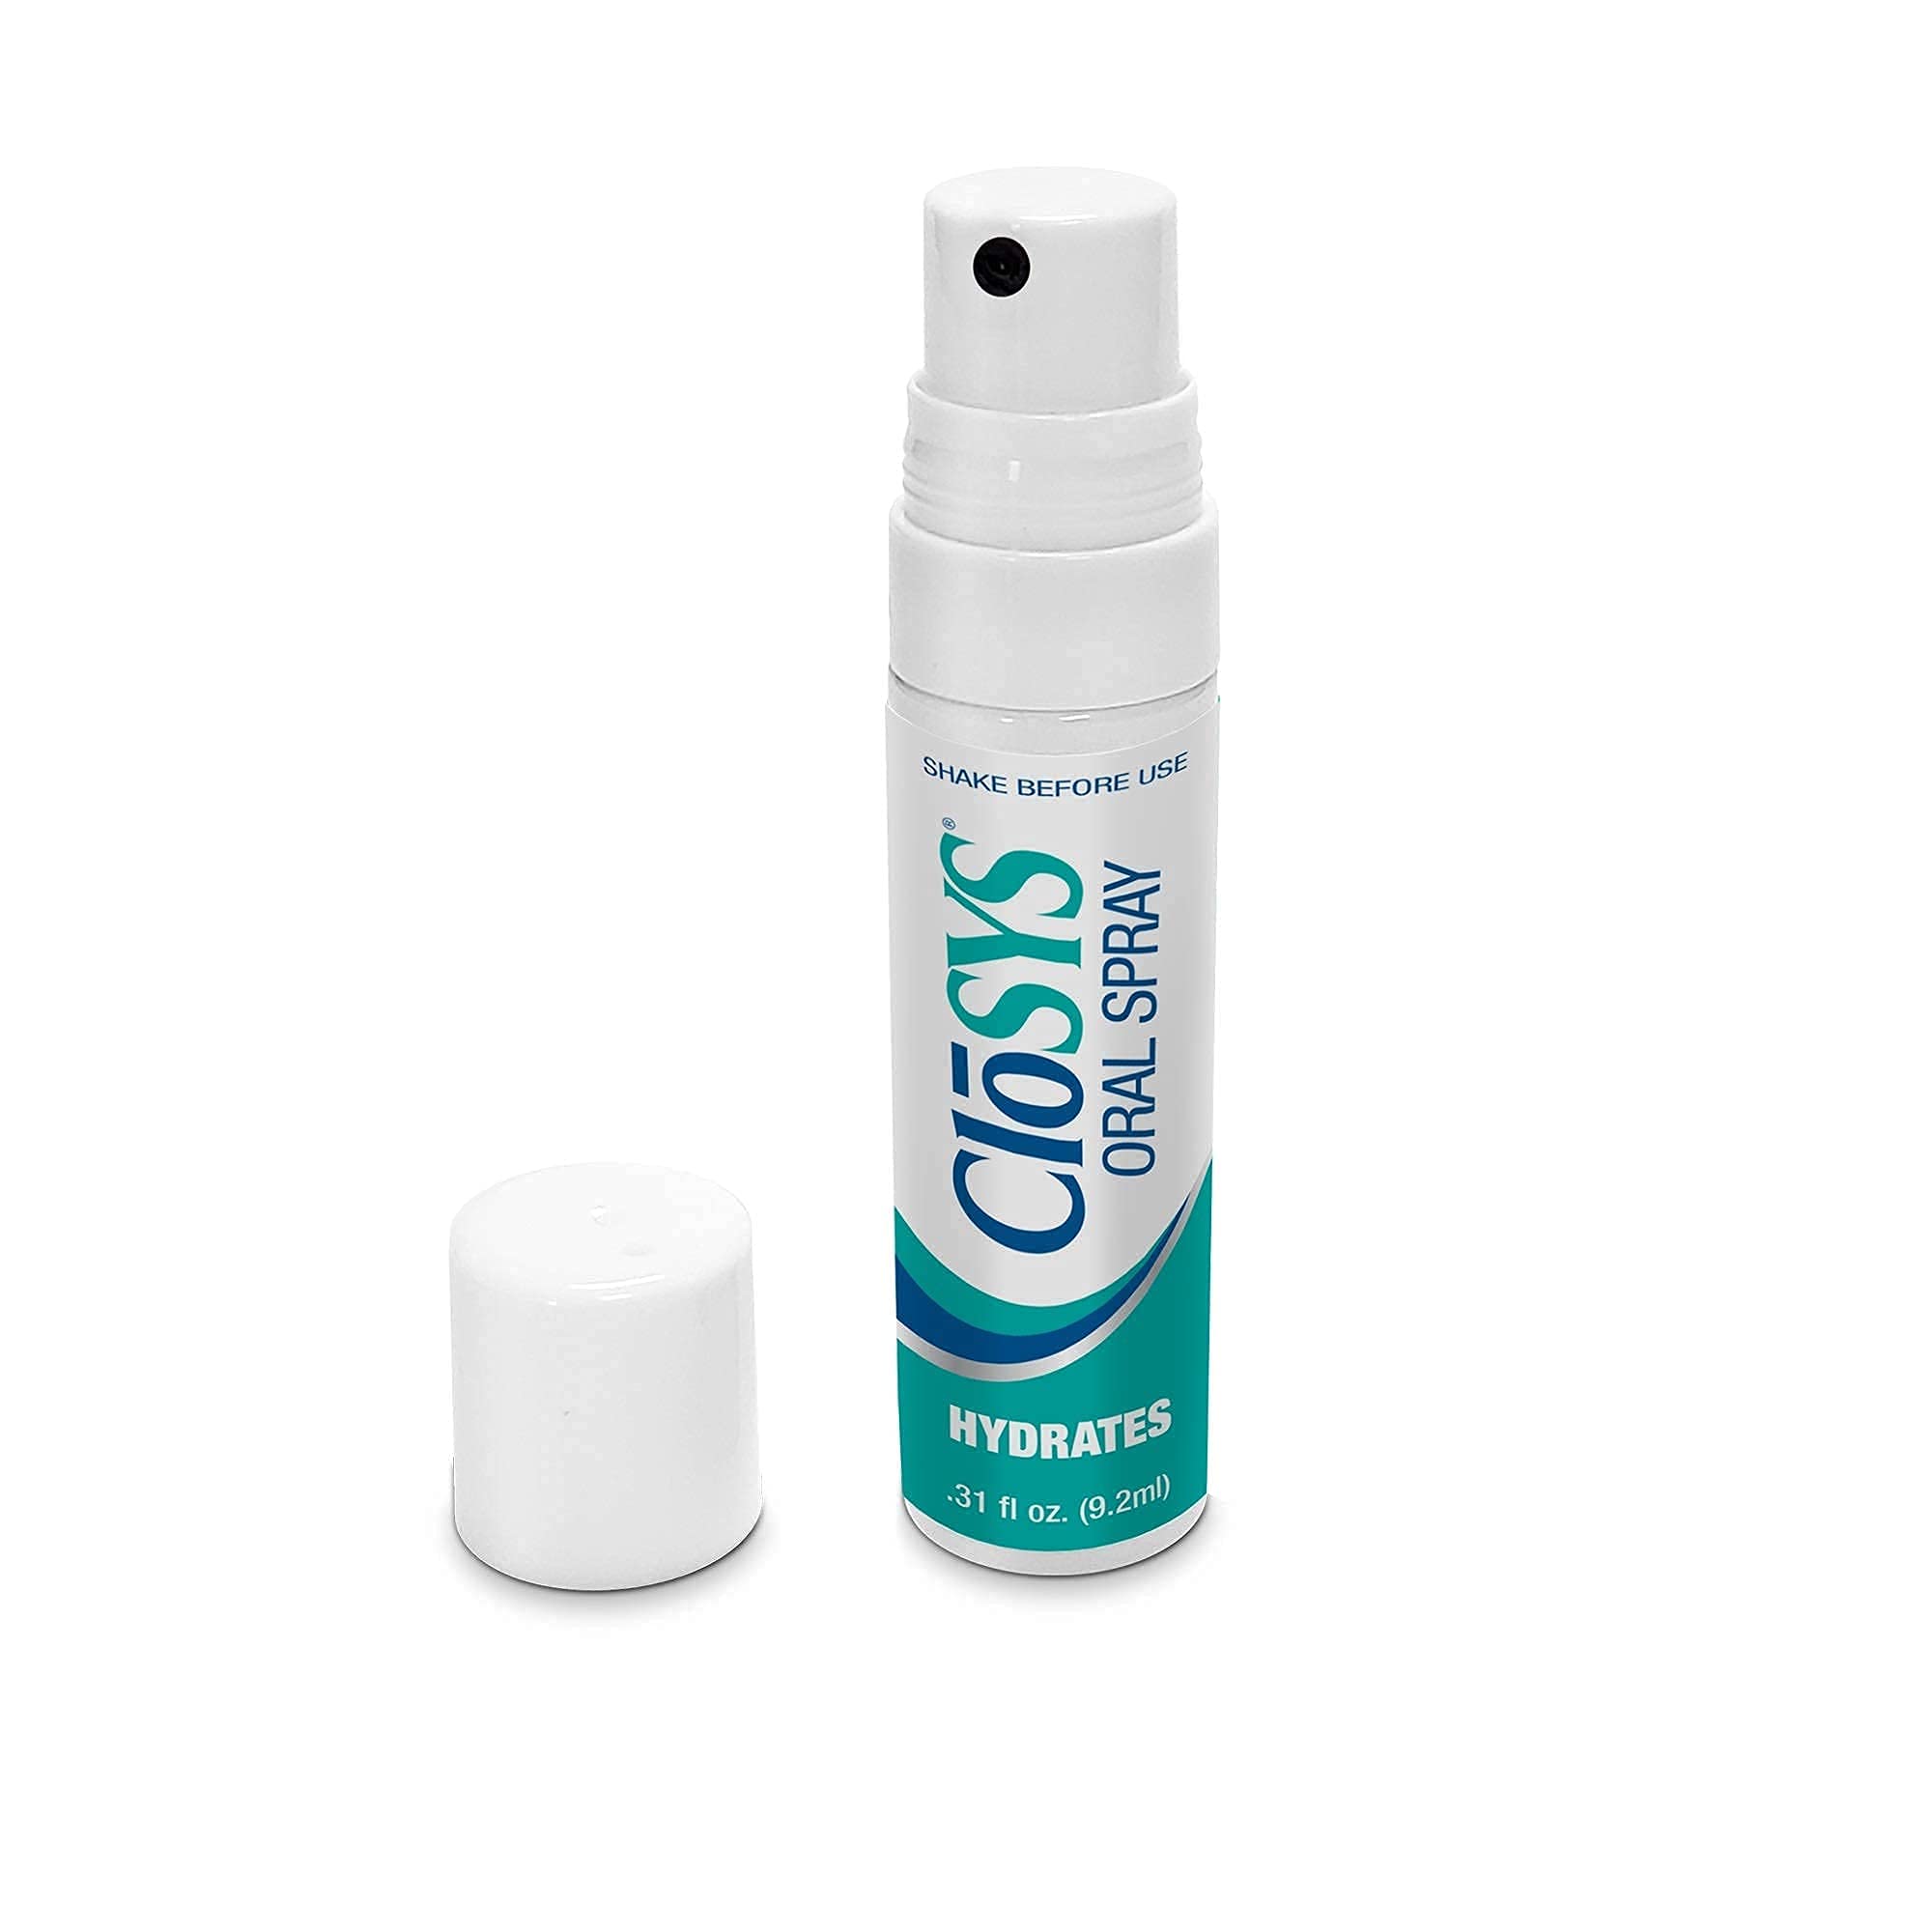 CloSYS Oral Breath Spray, 0.31 Ounce (3 Count), Mint, Sugar Free, pH Balanced, Fights Bad Breath